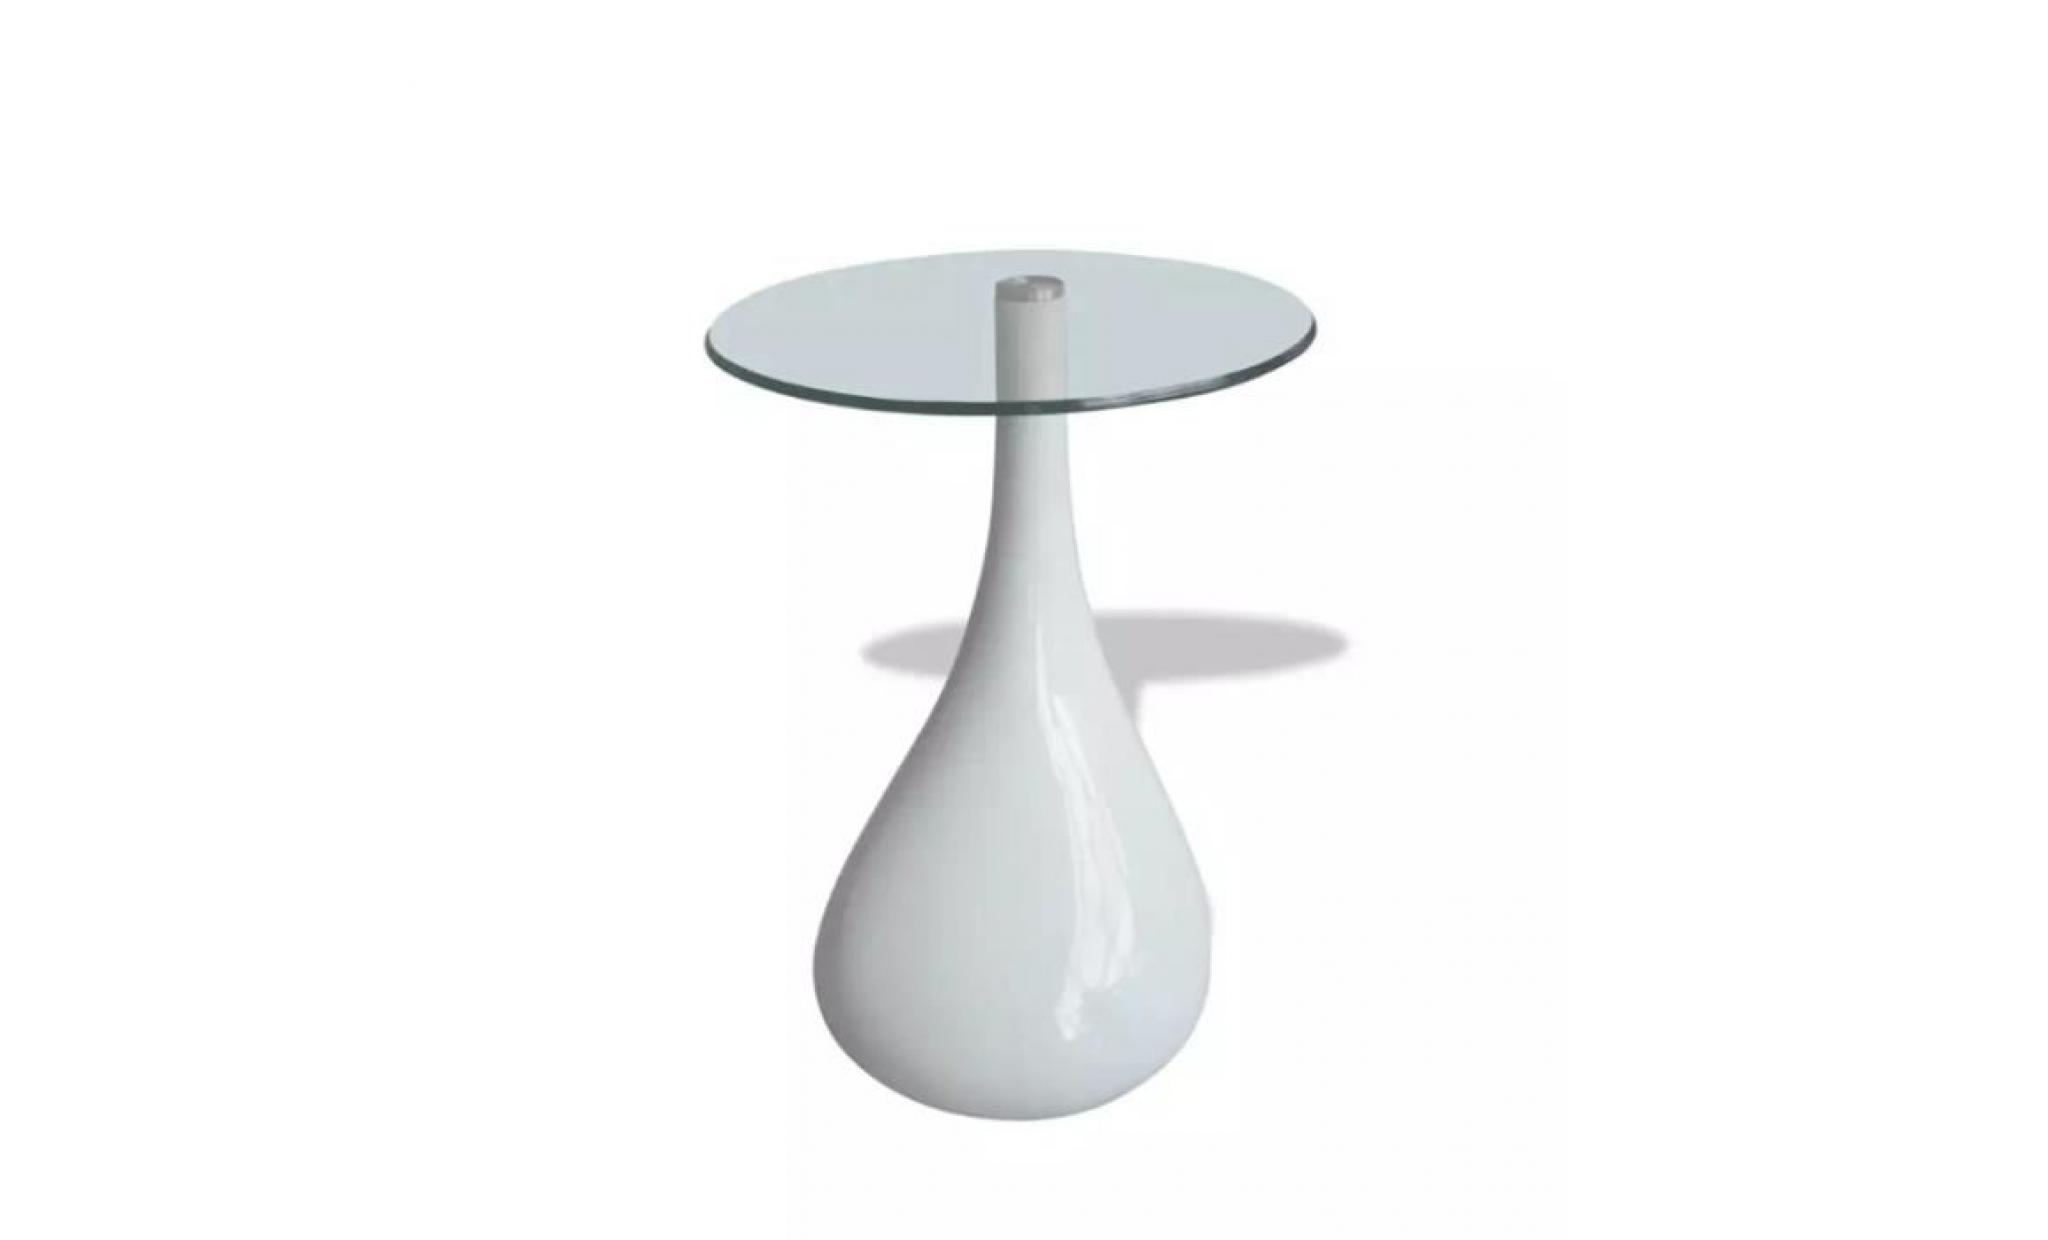 vidaxl table basse avec plateau en verre rond   blanc pas cher